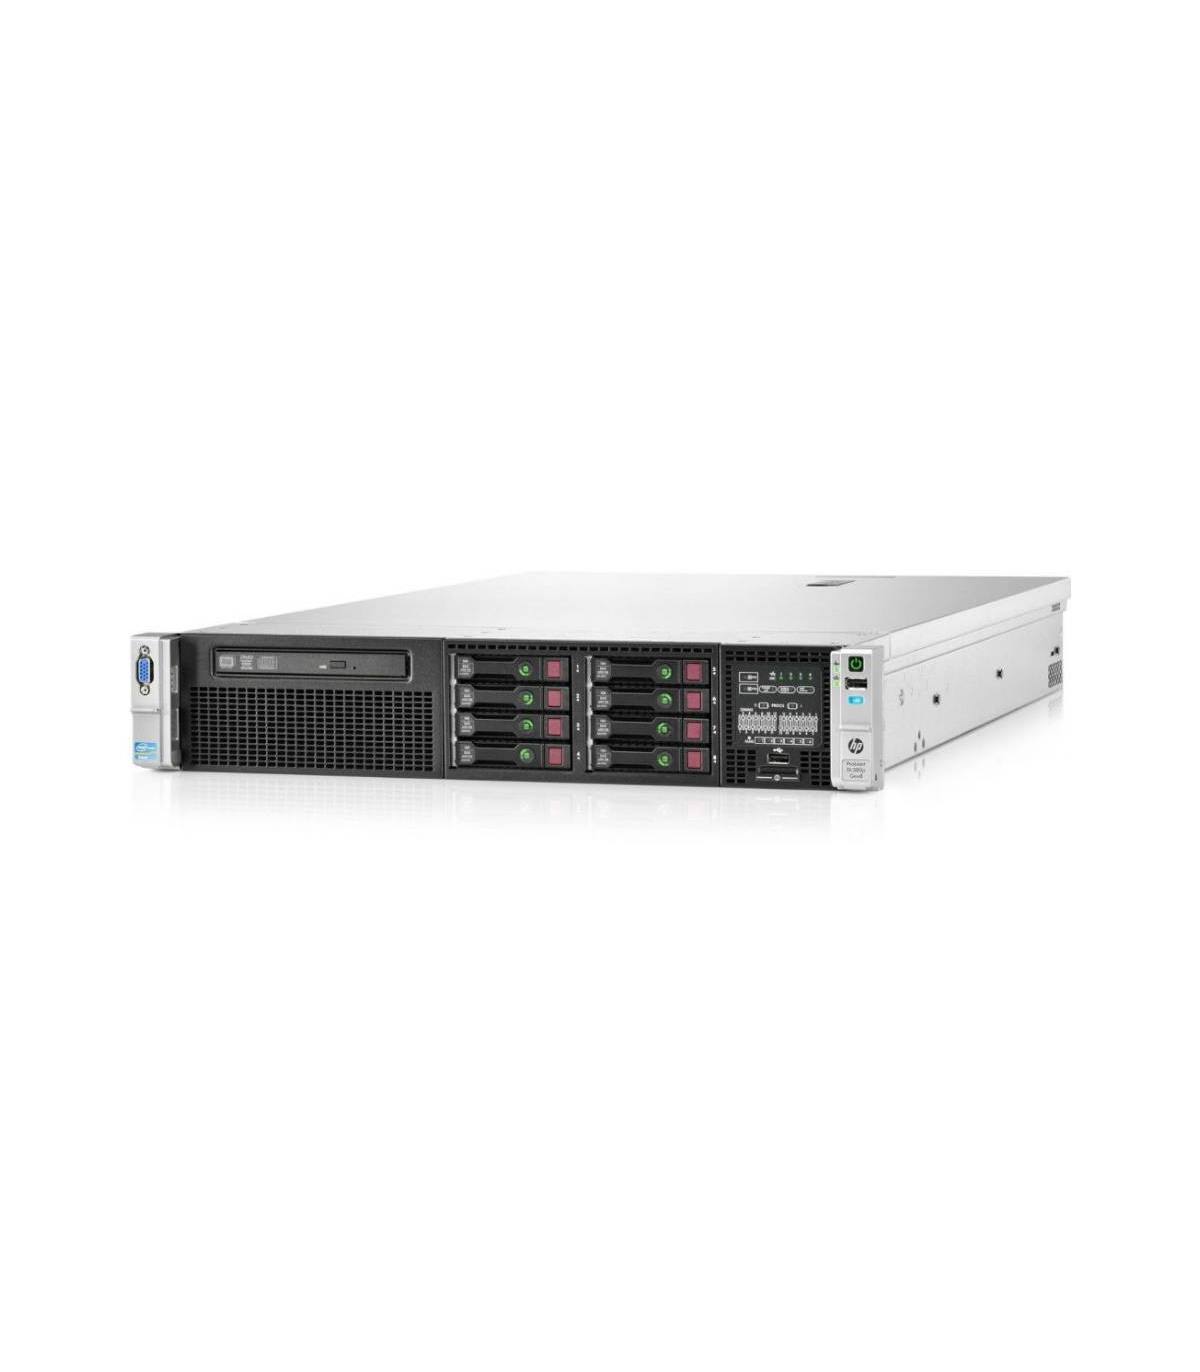 HP DL380P G8 1X4C E5-2609 2,40 GHz 16GB 8X2,5" P420i 1GB ILO4 2X750W 331FLR